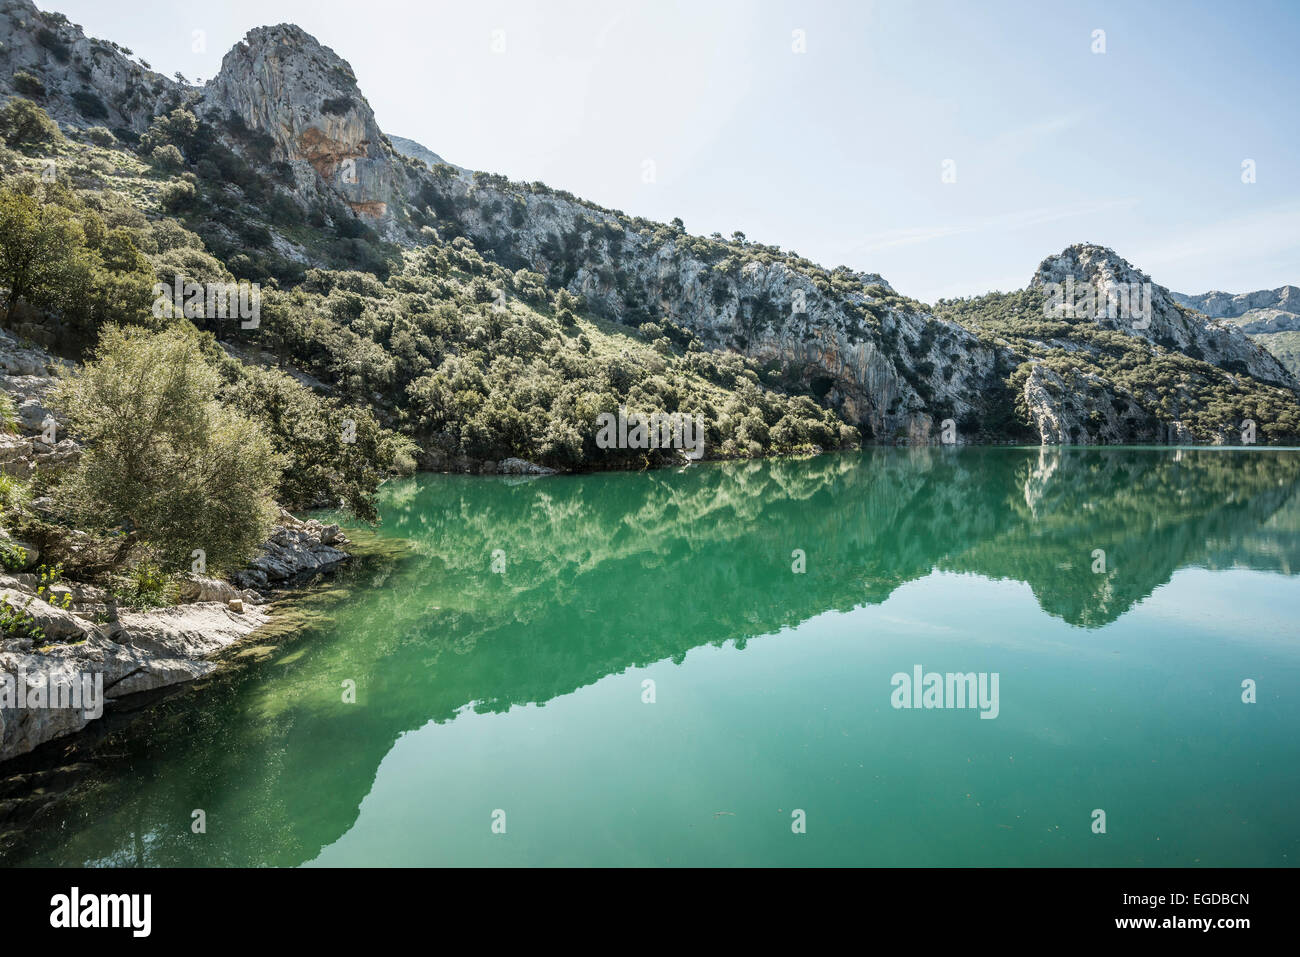 Gorg Blau lake, Serra de Tramuntana, Majorca, Spain Stock Photo